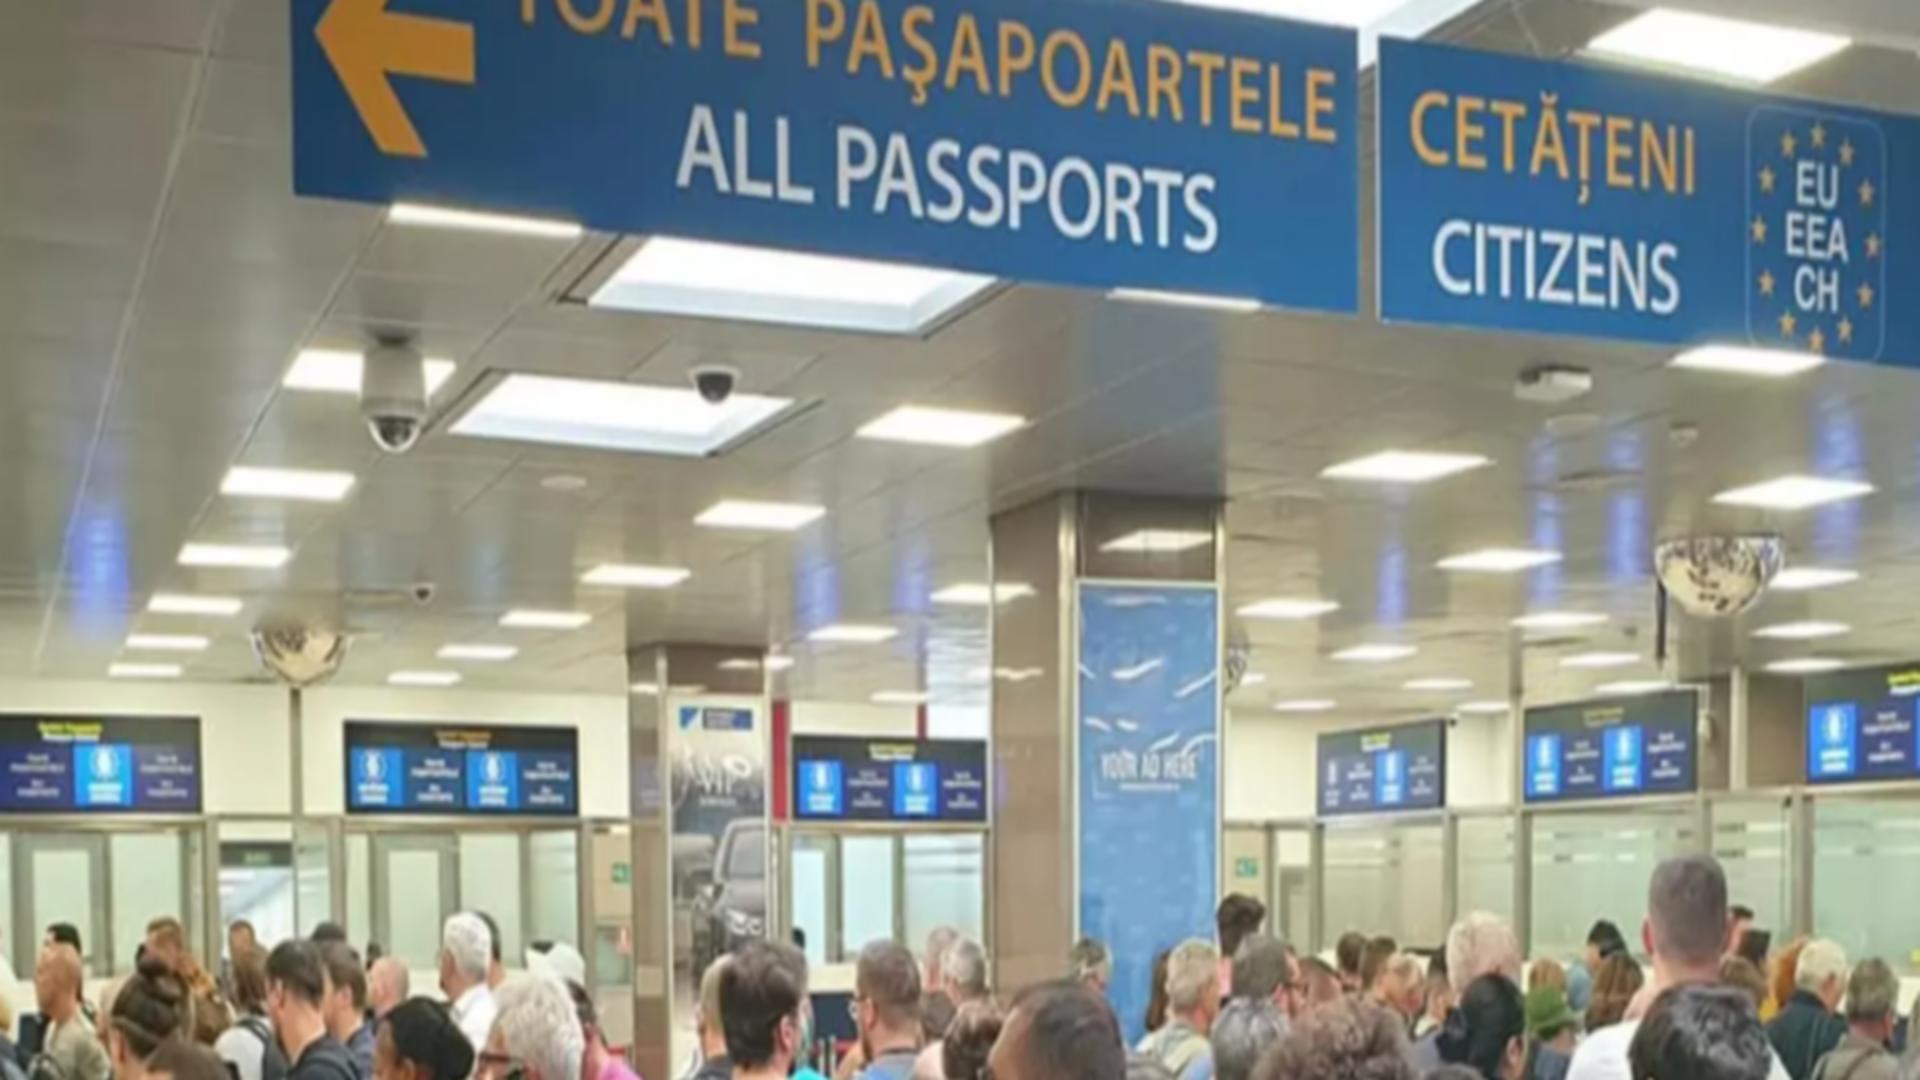 Haosul curselor anulate și întârziate pe aeroportul Otopeni - Câte zboruri au avut probleme în ultimele 7 zile